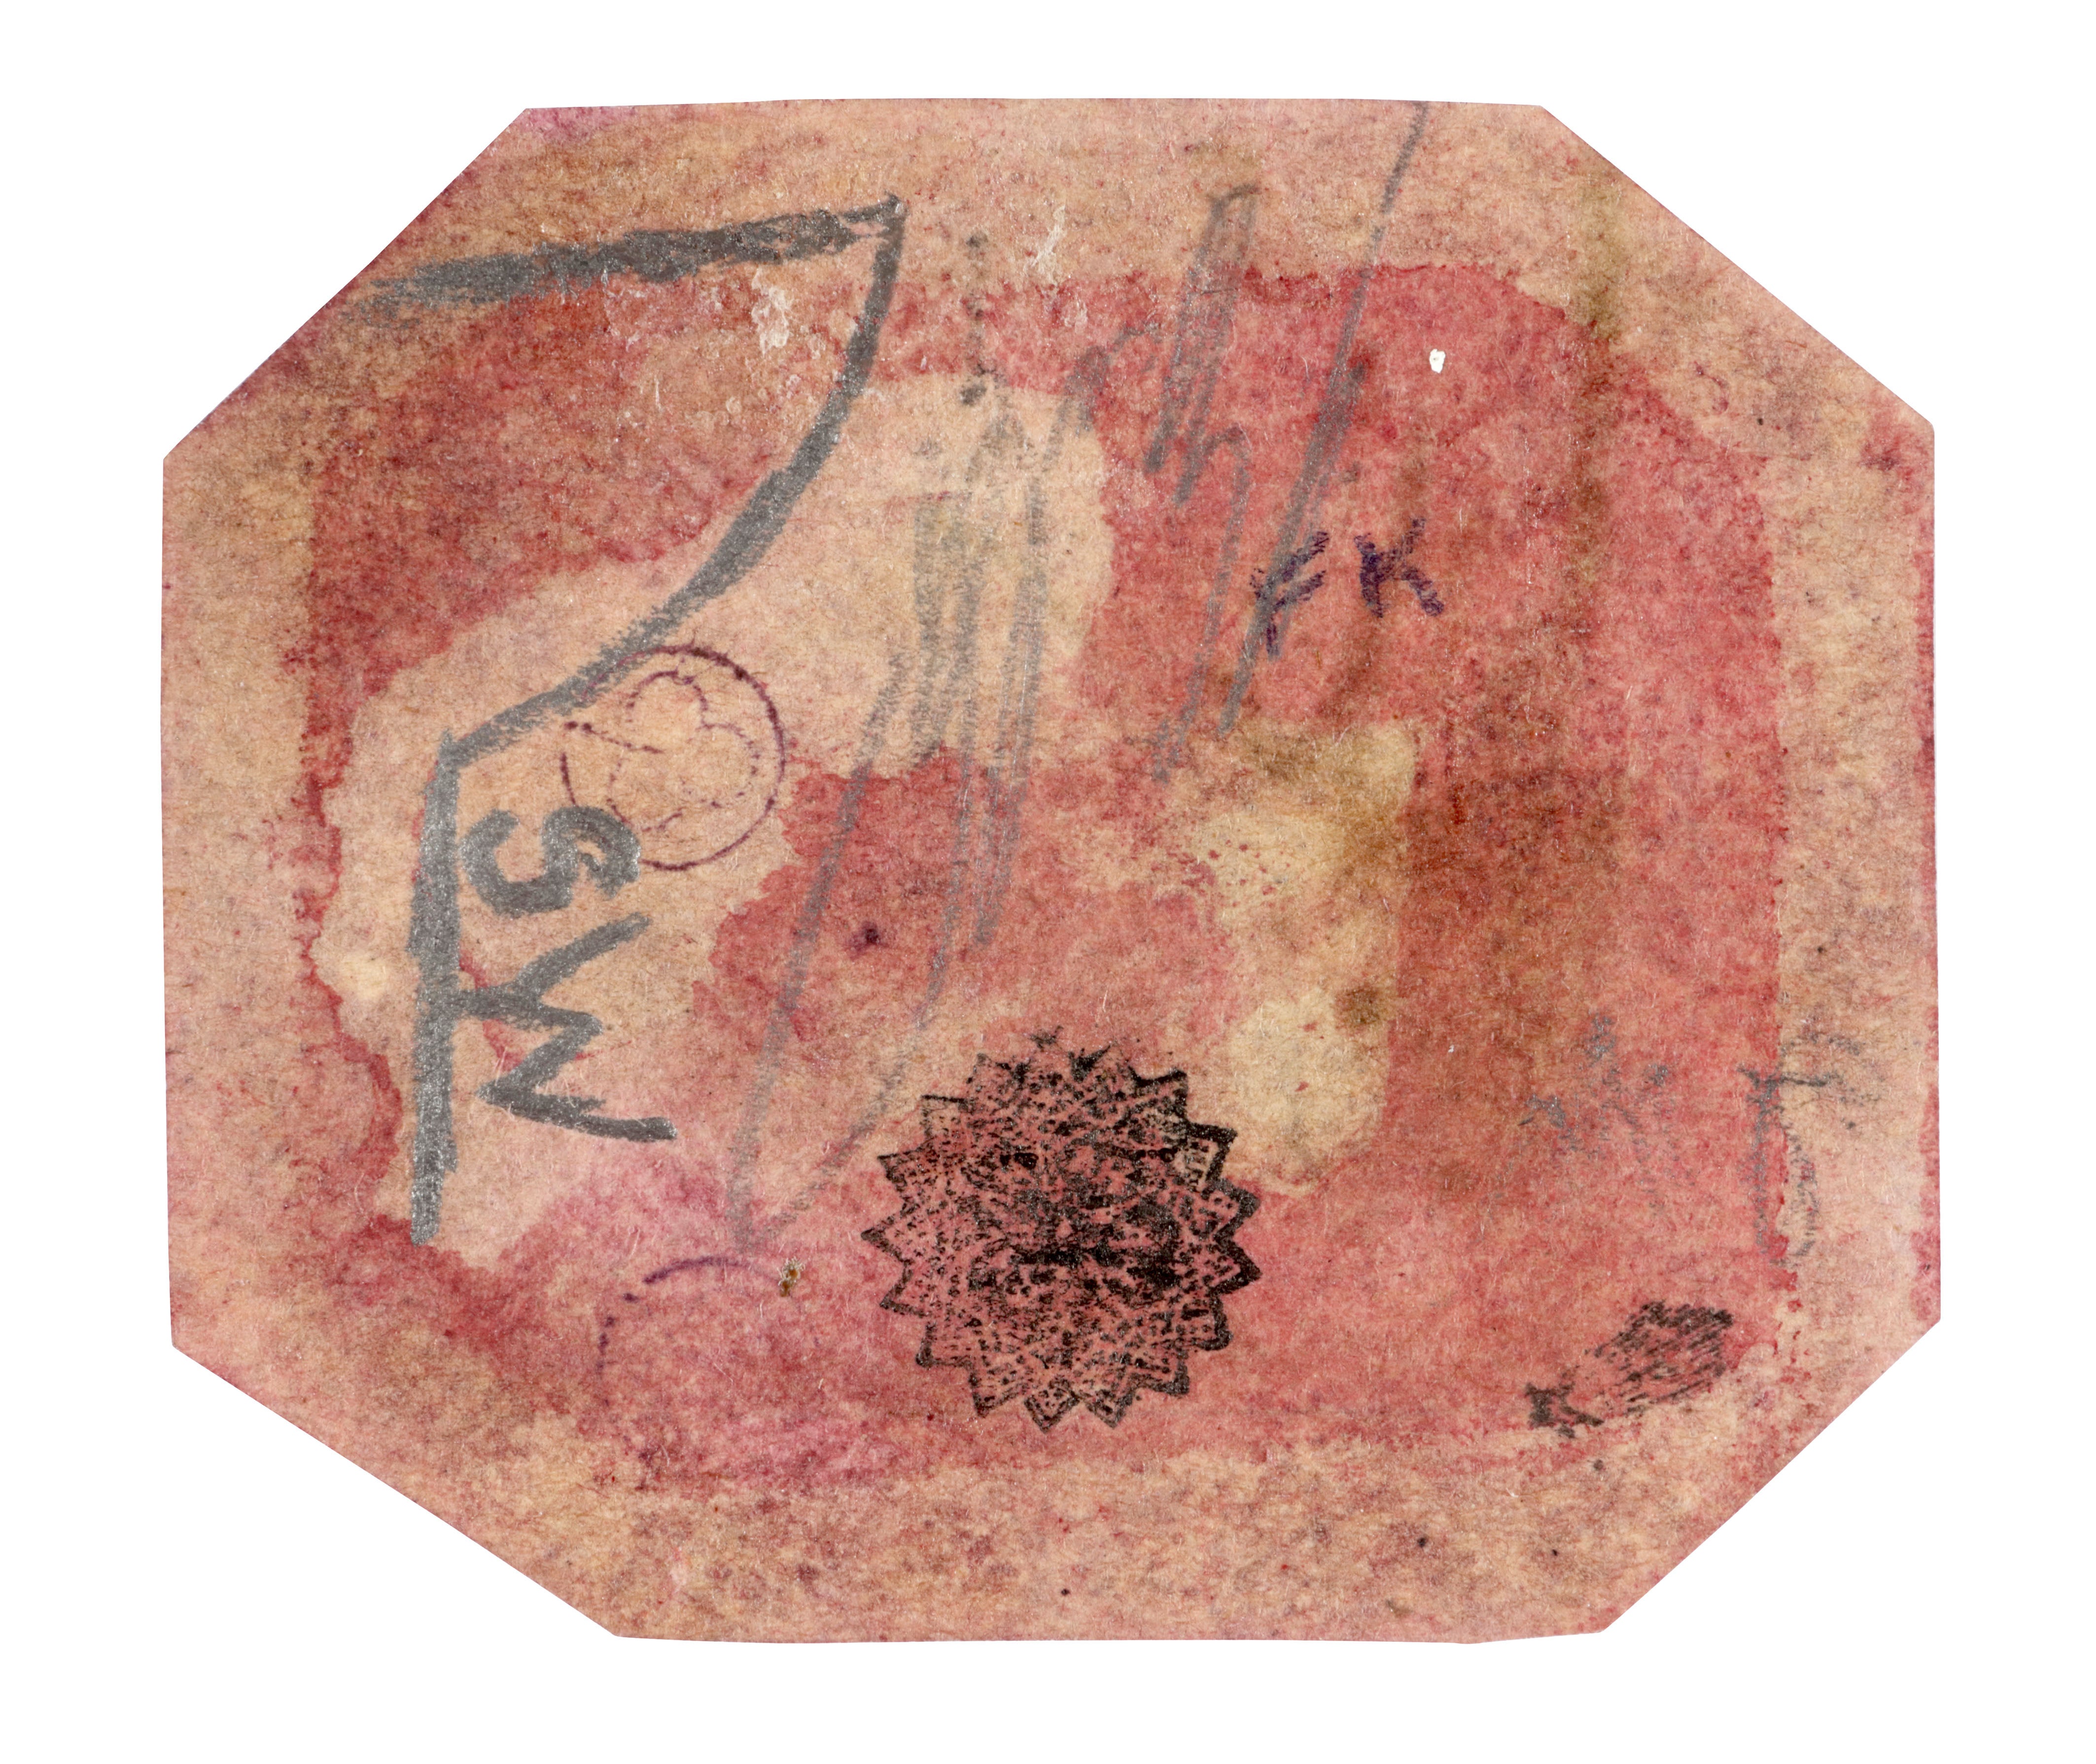 The world’s rarest stamp, the British Guiana 1c Magenta